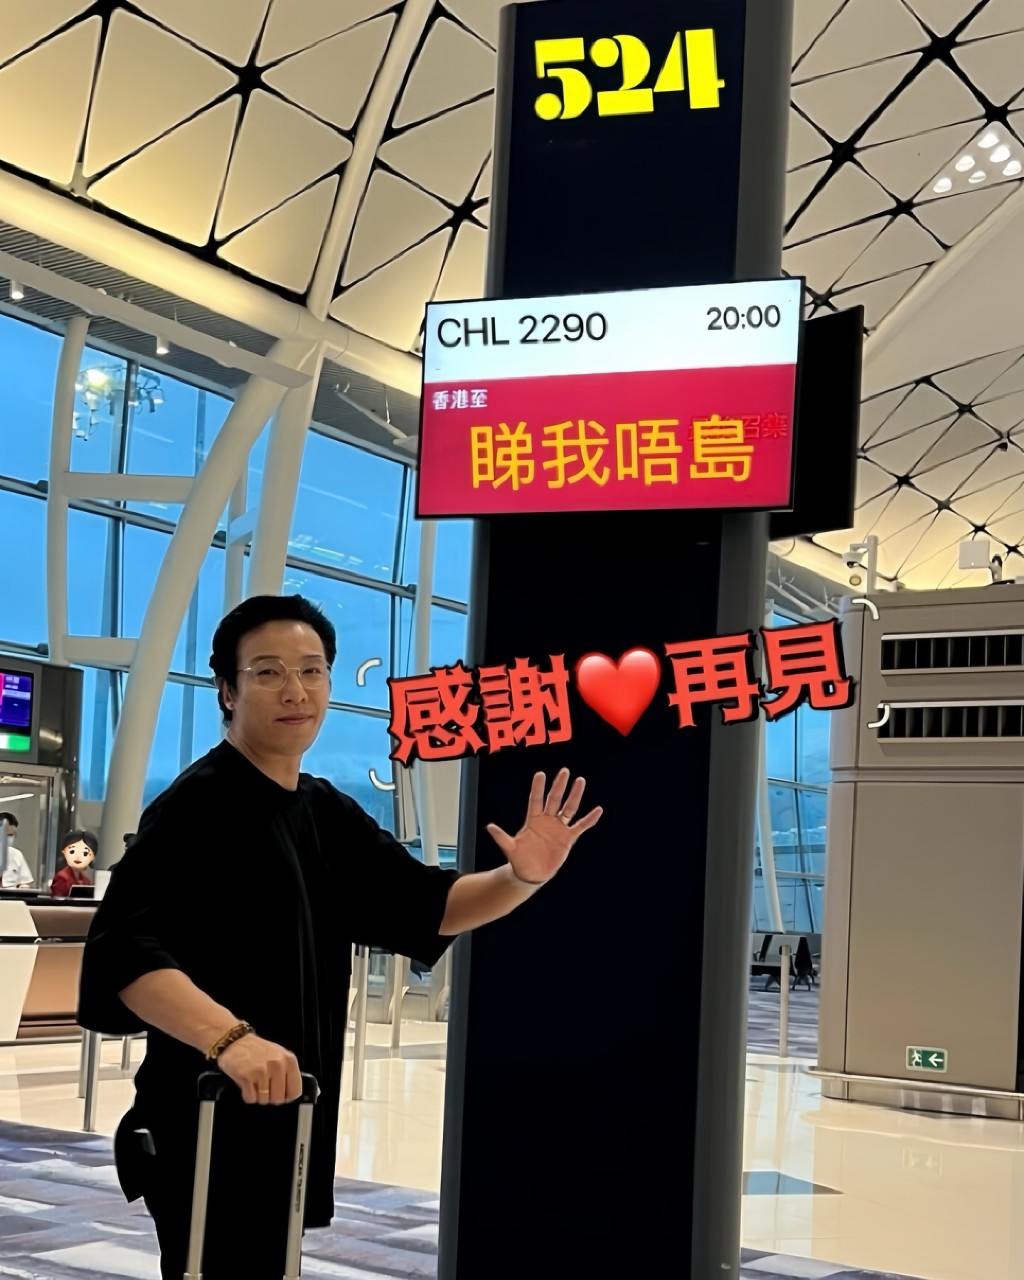 郑世豪附上一张离港登机照，当中荧幕显示的目的地恶搞为「睇我唔岛」。